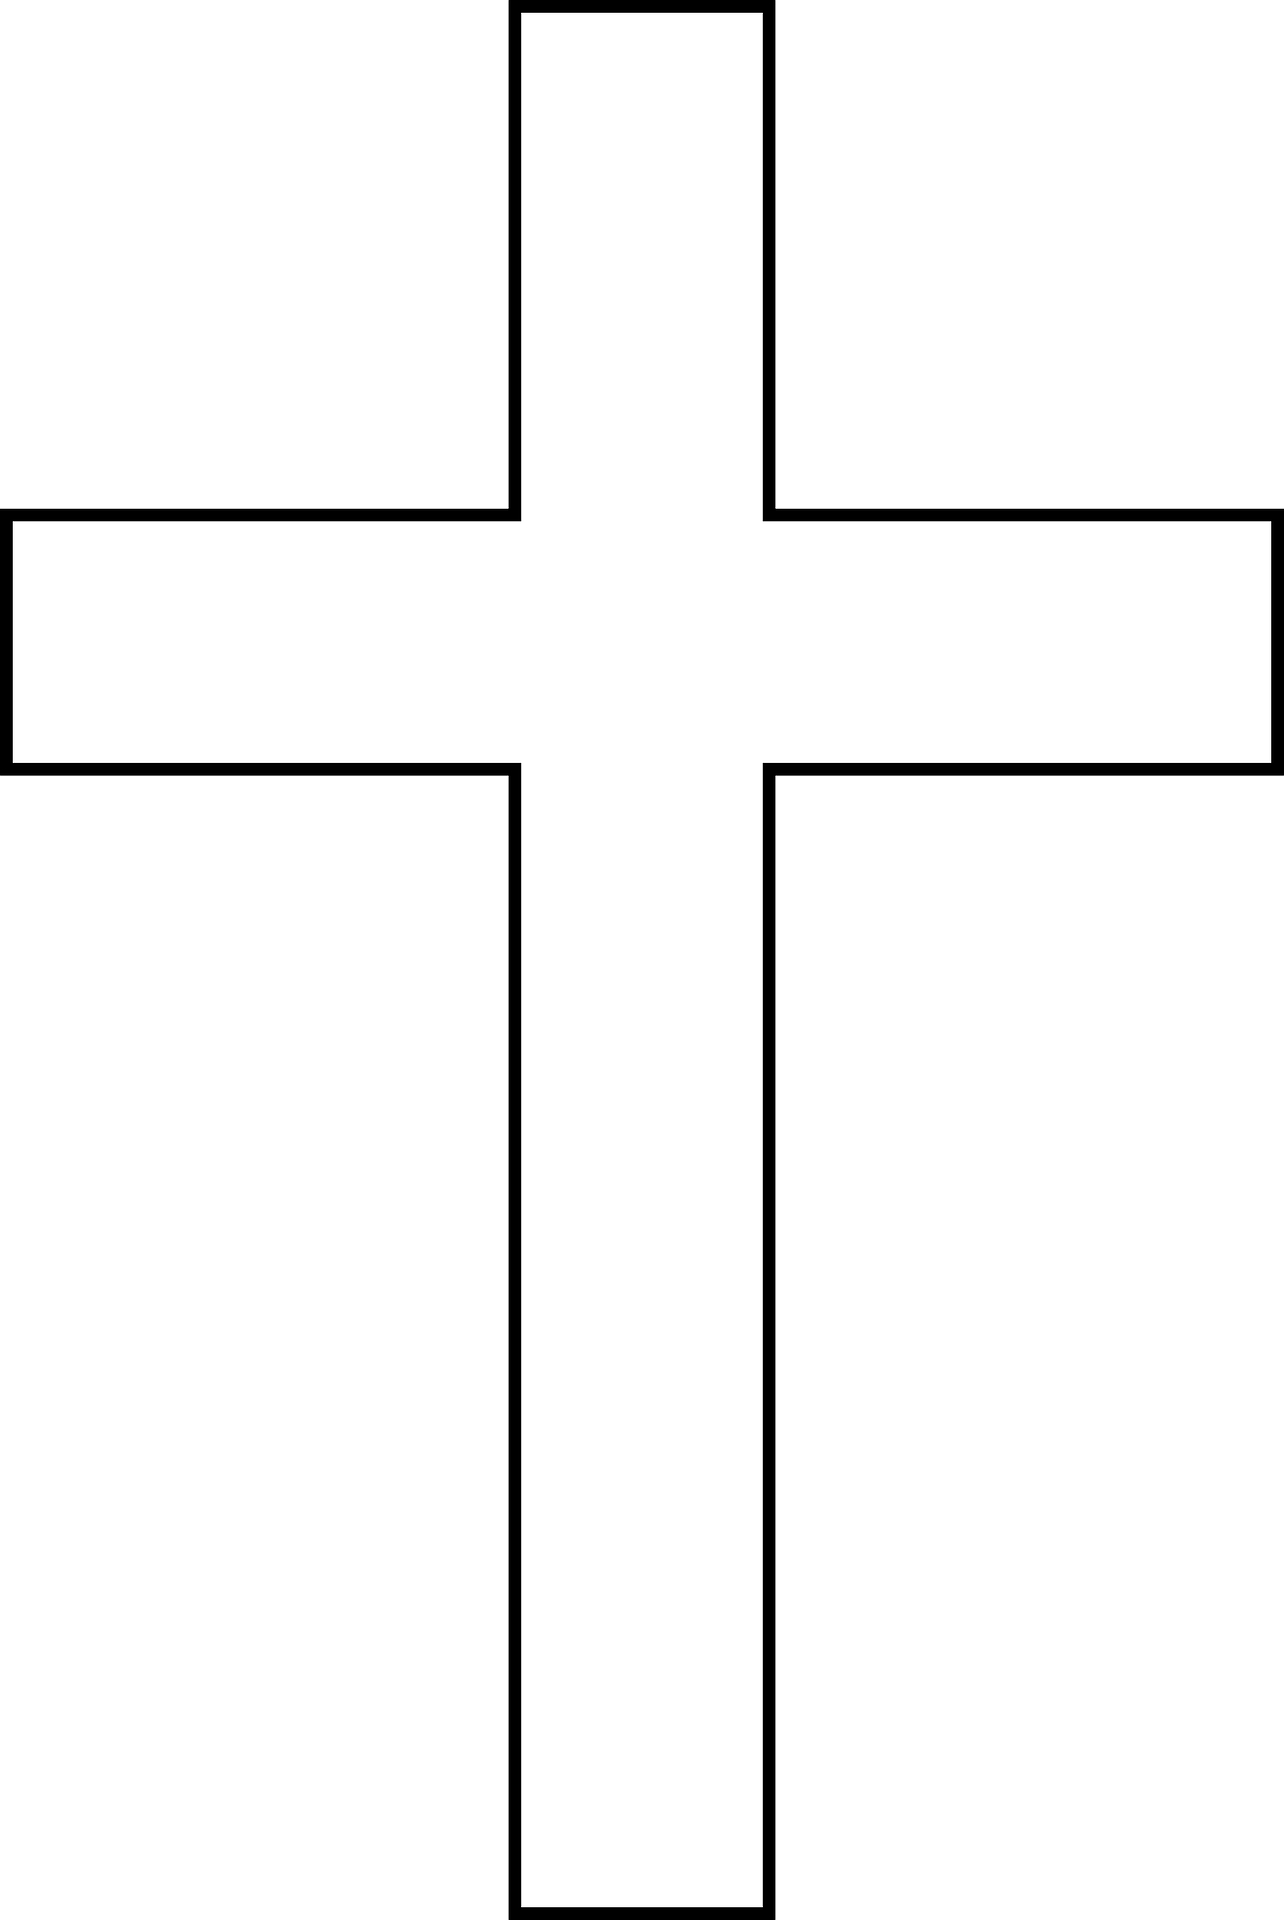 crucifix clipart vector